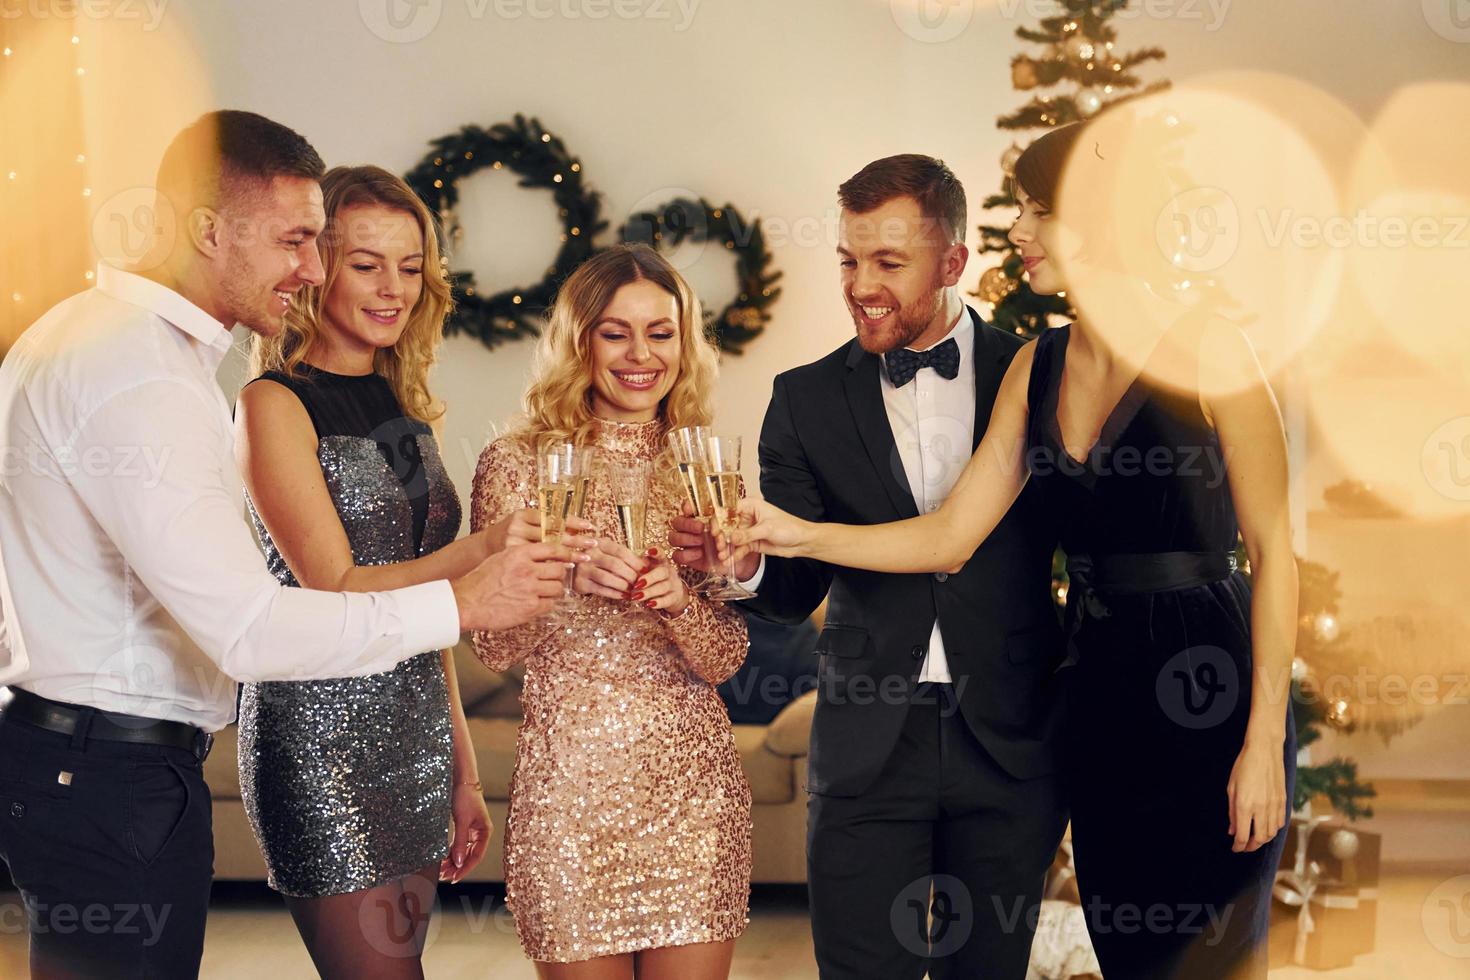 x-mas tid. grupp av människor ha en ny år fest inomhus tillsammans foto